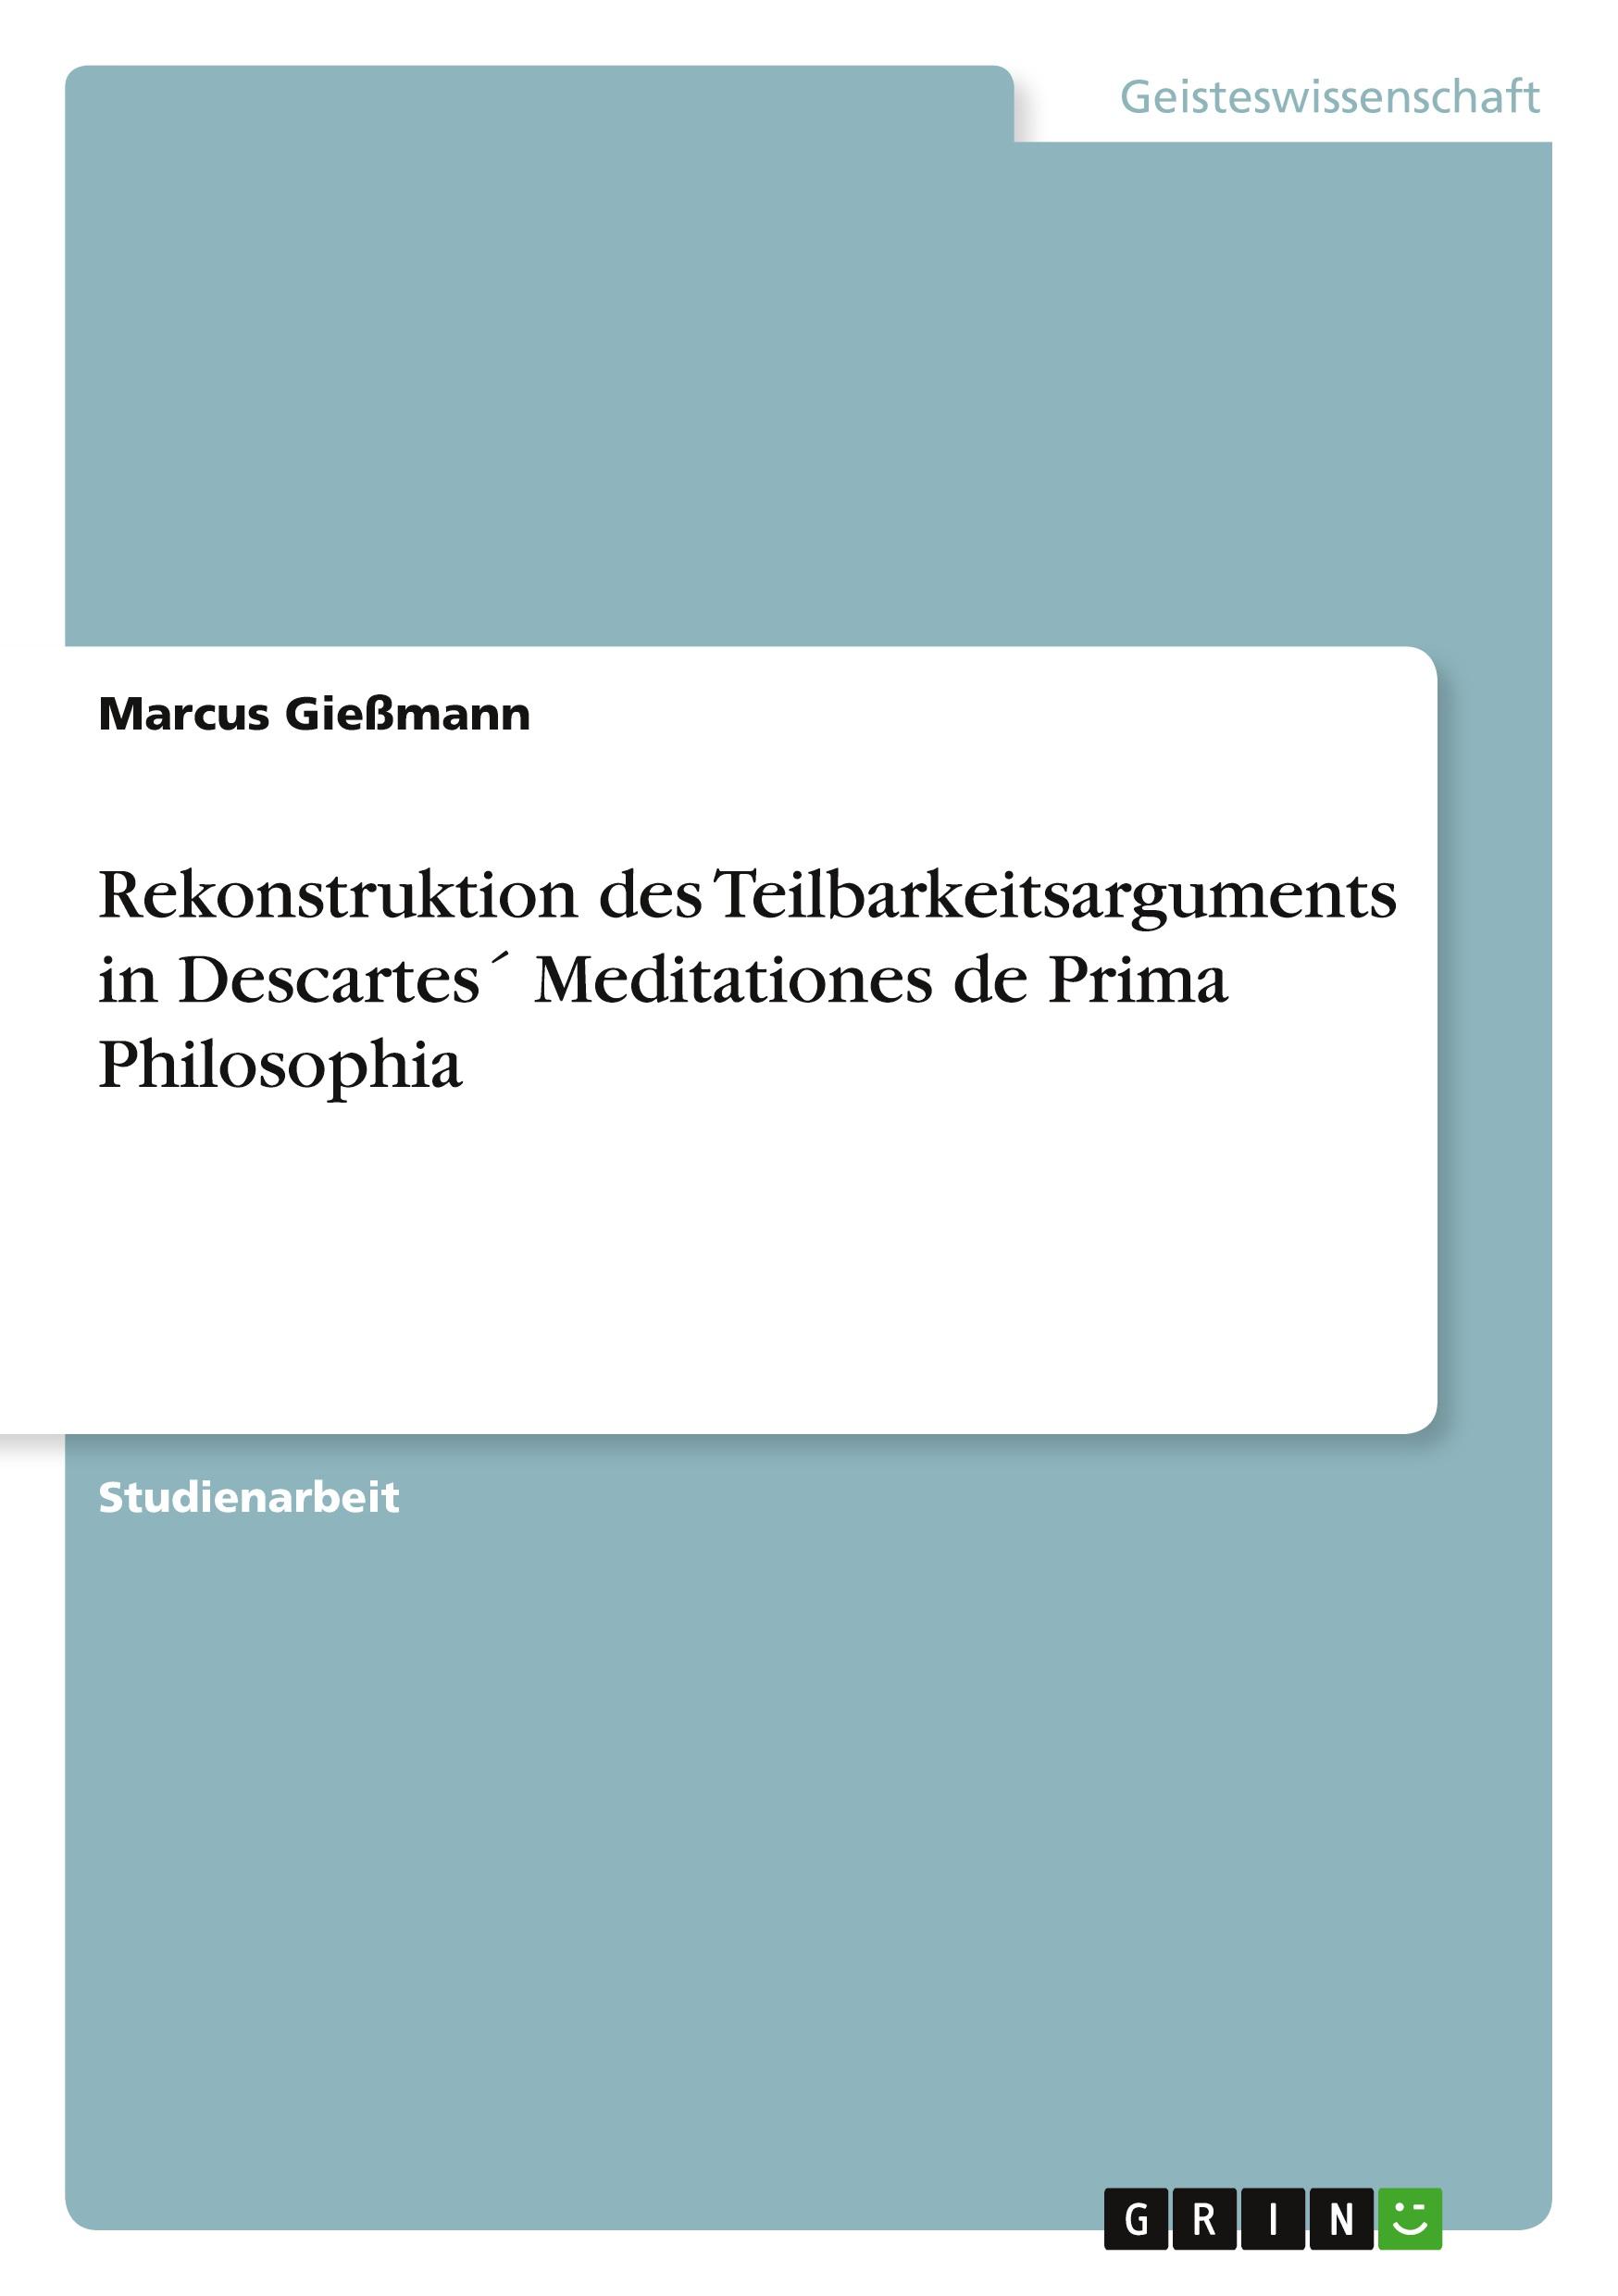 Rekonstruktion des Teilbarkeitsarguments in Descartes´ Meditationes de Prima Philosophia / Marcus Gießmann / Taschenbuch / Paperback / Deutsch / 2010 / GRIN Verlag / EAN 9783640763382 - Gießmann, Marcus